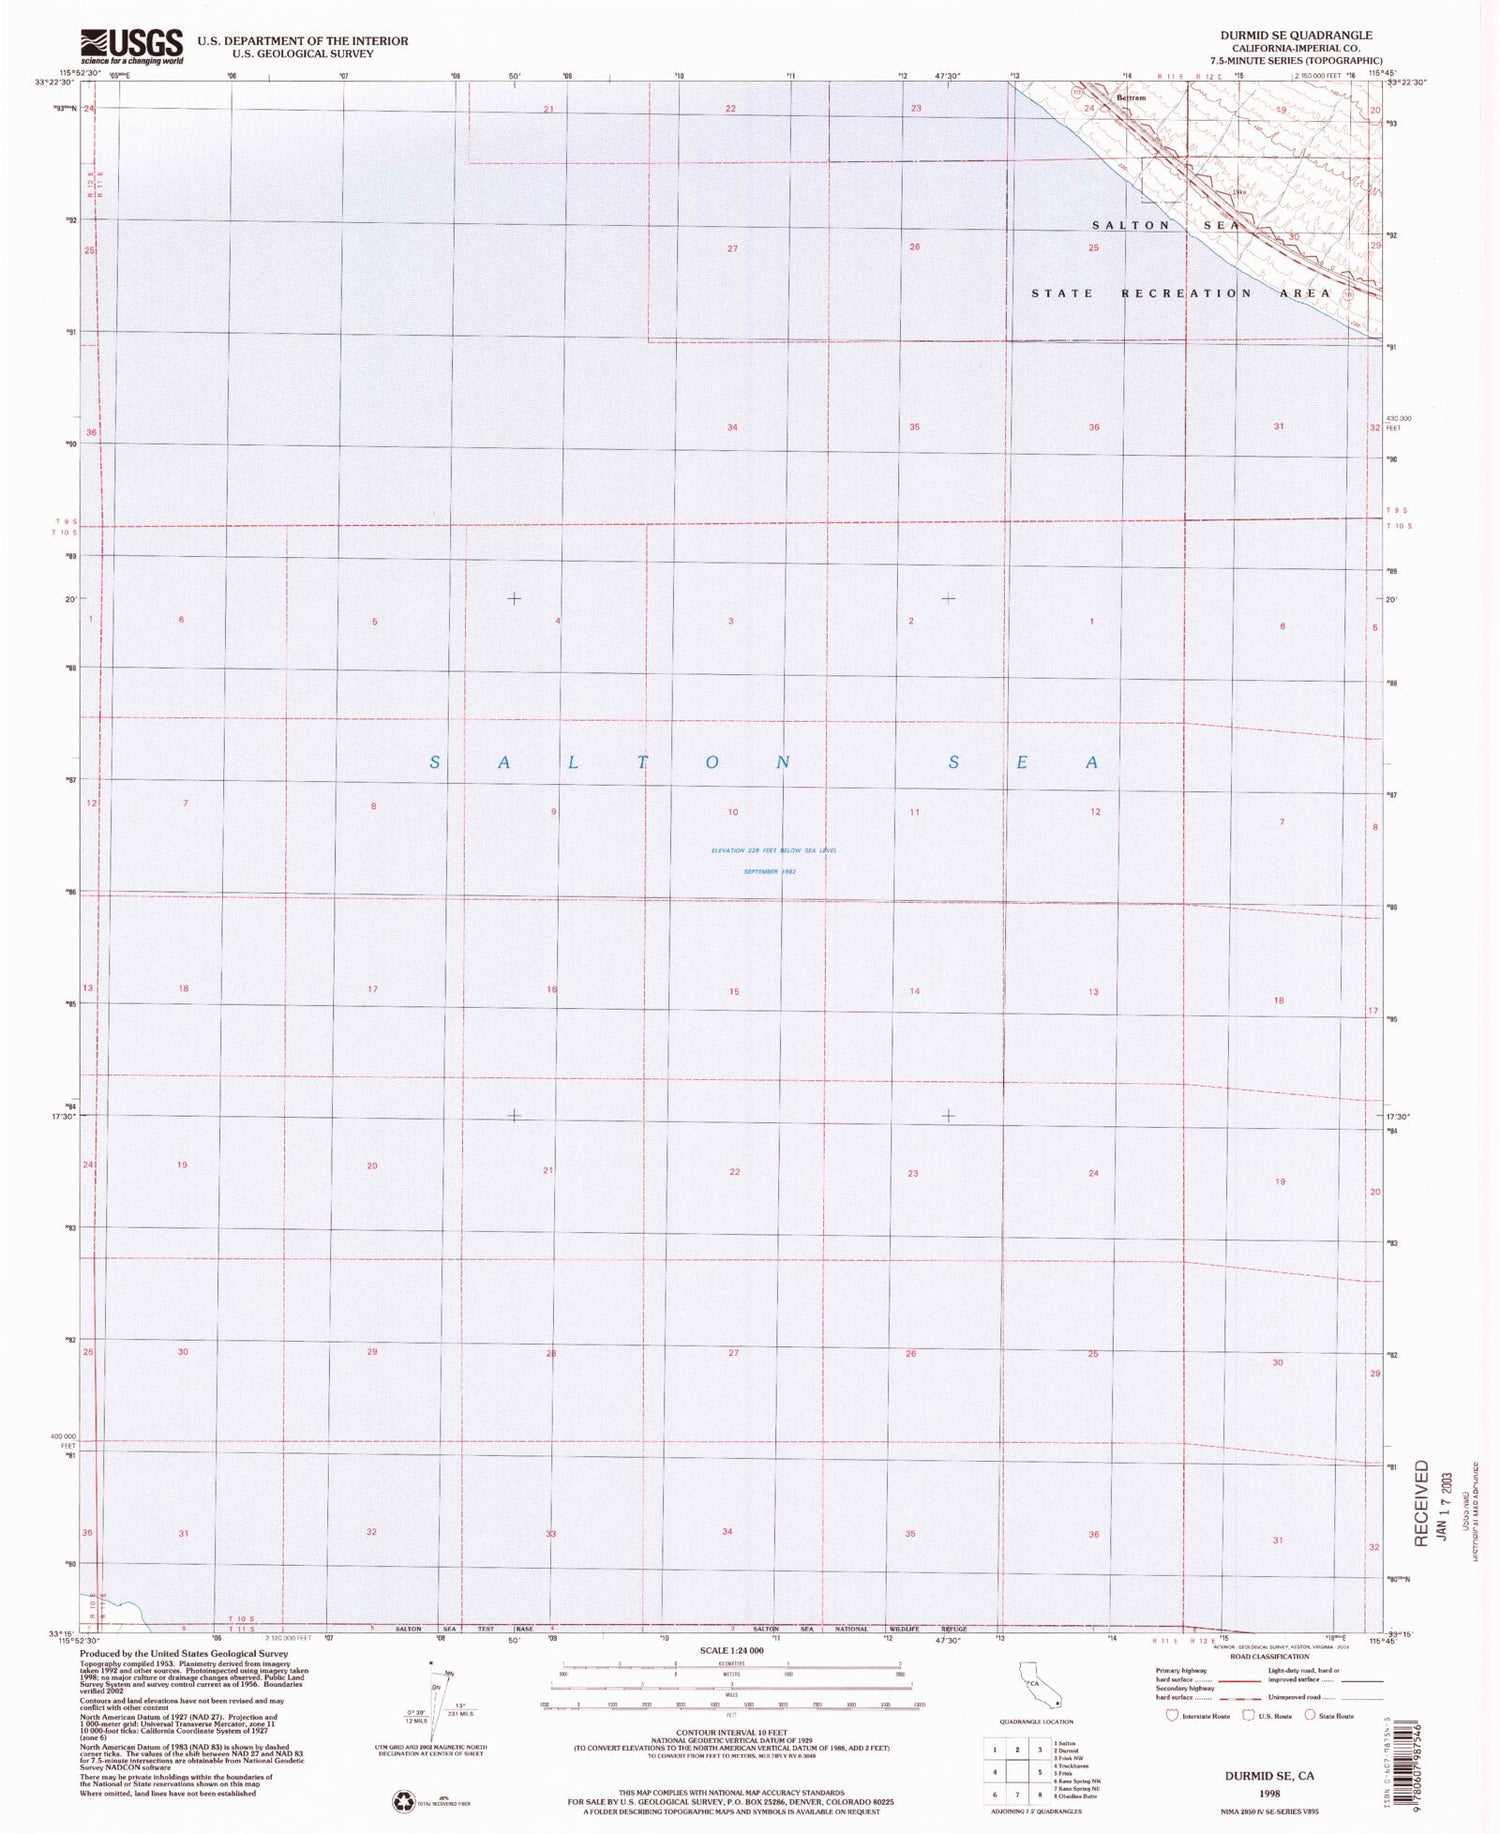 Classic USGS Durmid SE California 7.5'x7.5' Topo Map Image